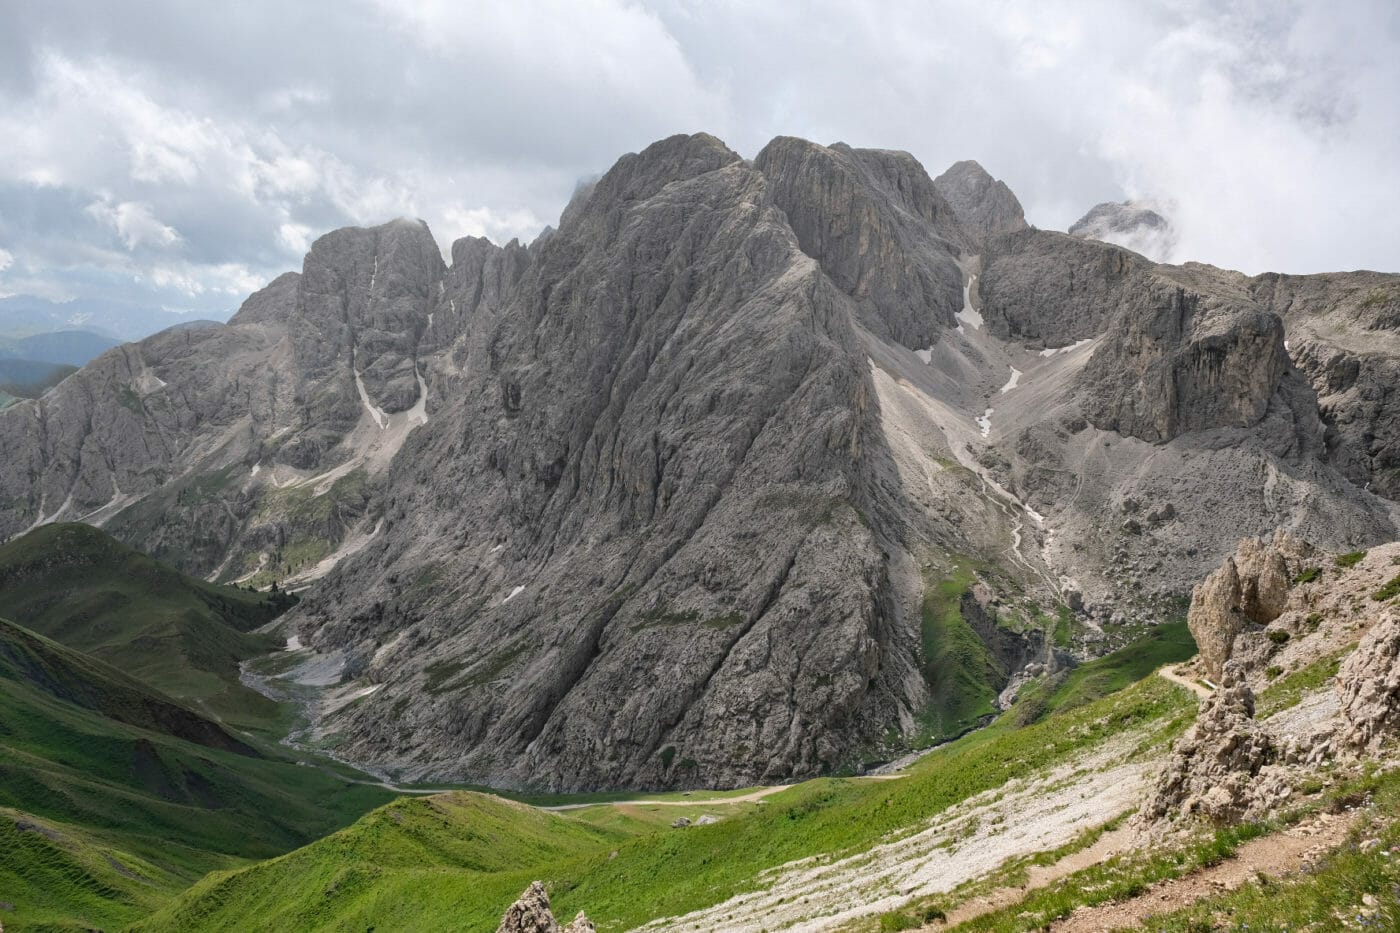 The impressive Catinaccio massif in Seiser Alm, Dolomites